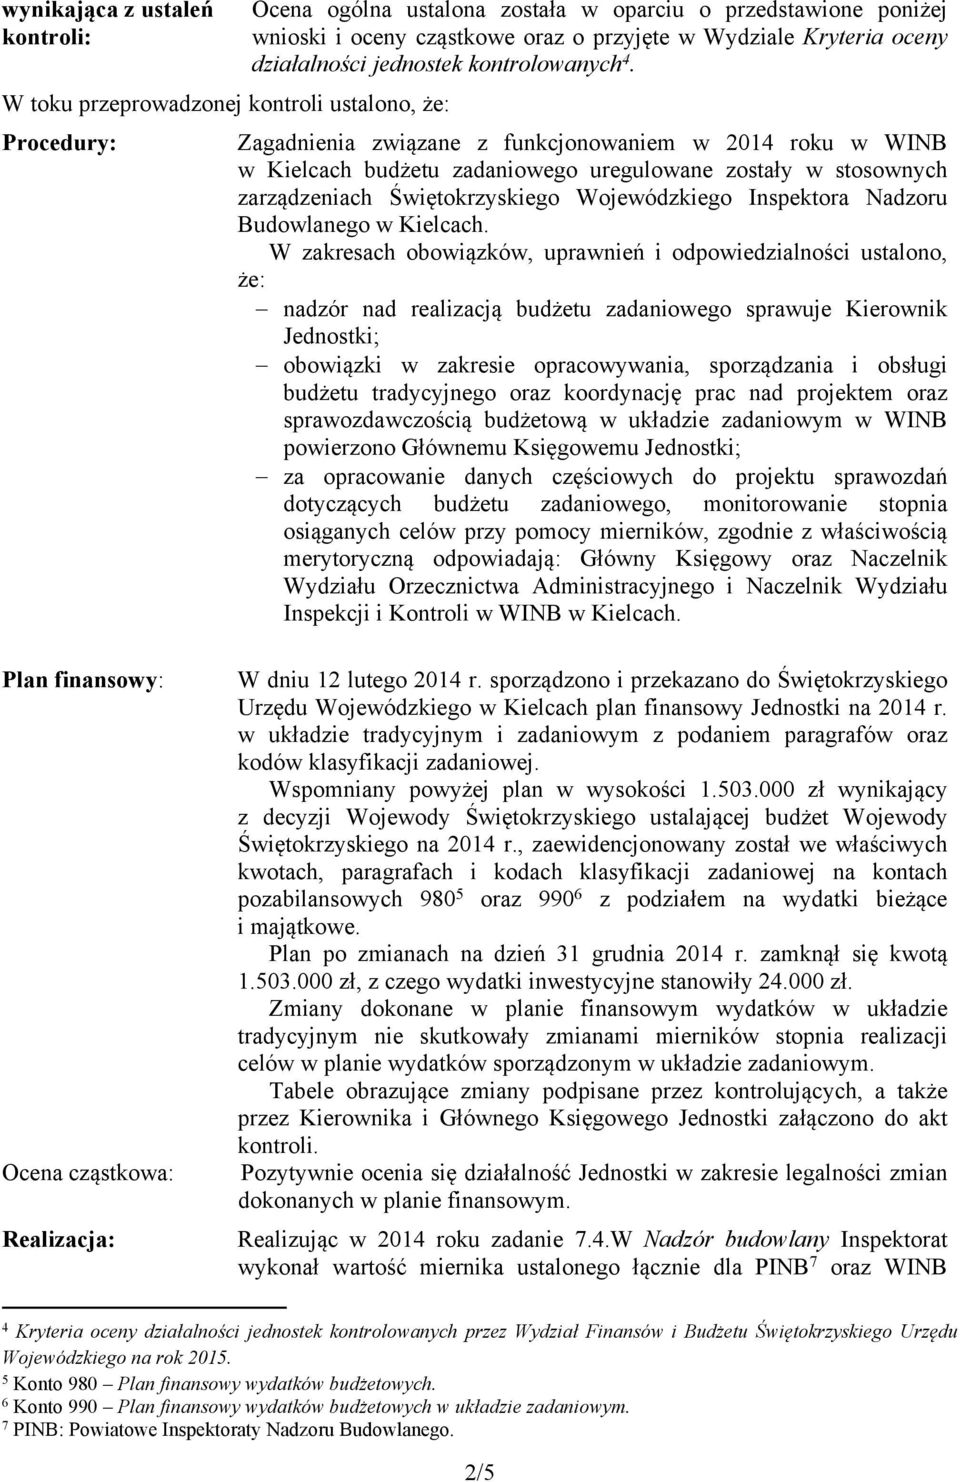 Zagadnienia związane z funkcjonowaniem w 2014 roku w WINB w Kielcach budżetu zadaniowego uregulowane zostały w stosownych zarządzeniach Świętokrzyskiego Wojewódzkiego Inspektora Nadzoru Budowlanego w